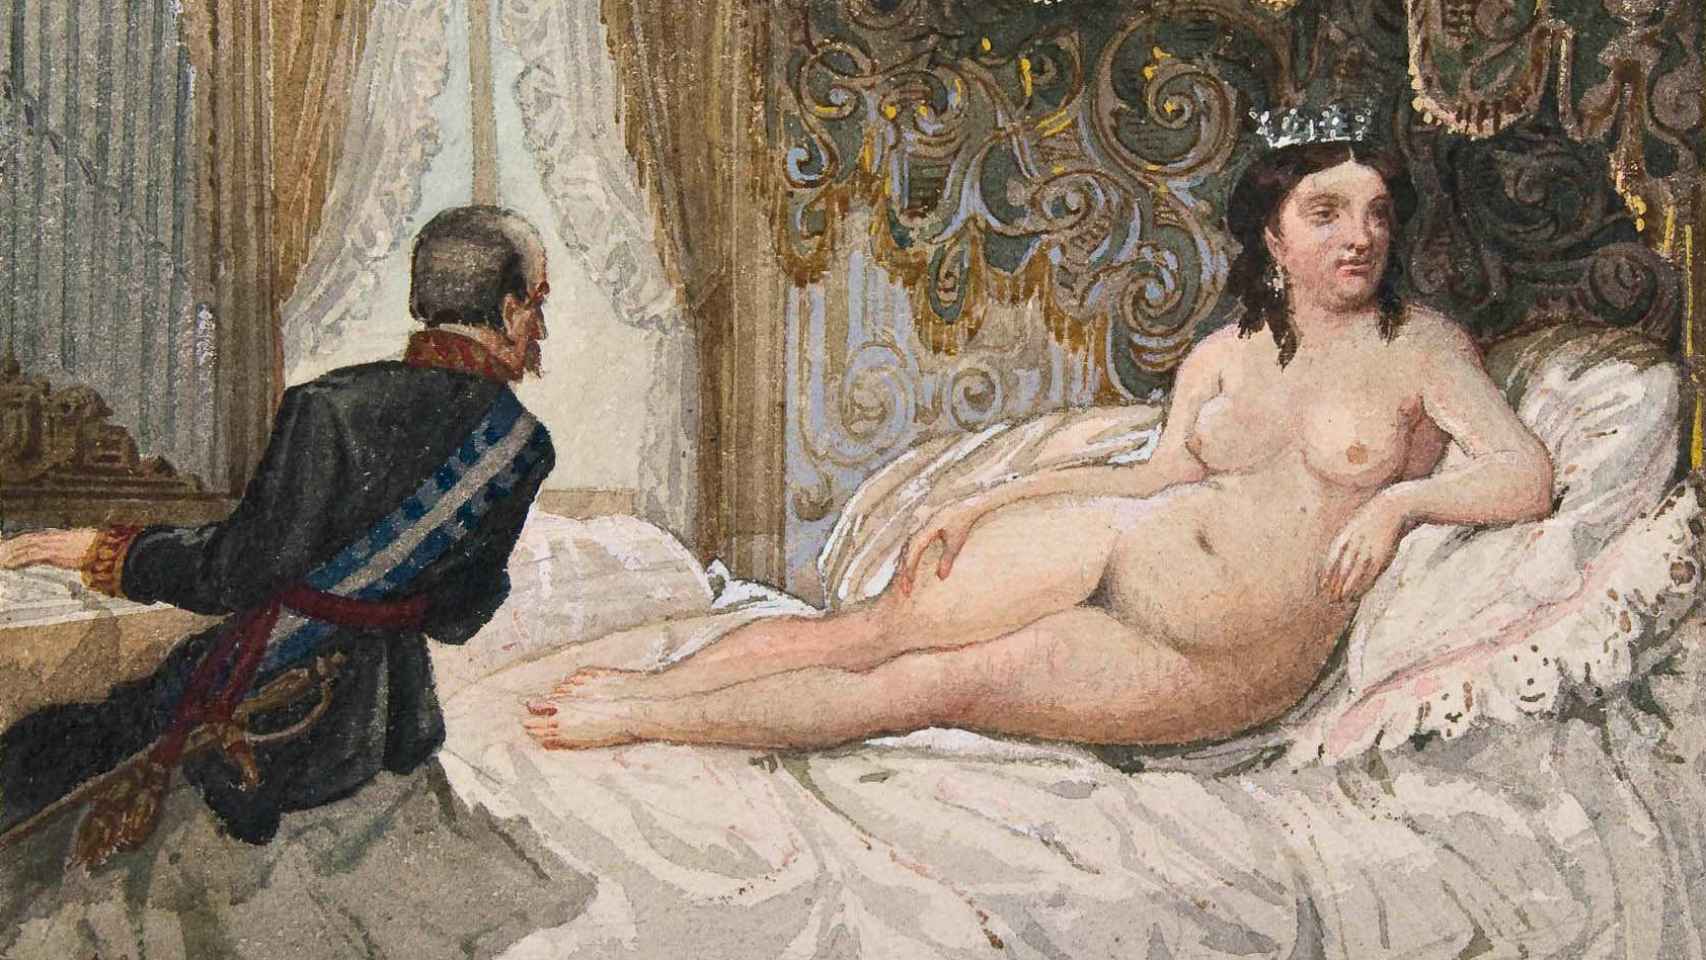 Escena que recuerda el cuadro 'Venus y la música', de Tiziano. Luis González Bravo, último presidente del Consejo de Ministros isabelino, interpreta al piano una pieza para Isabel II, desnuda sobre la cama.